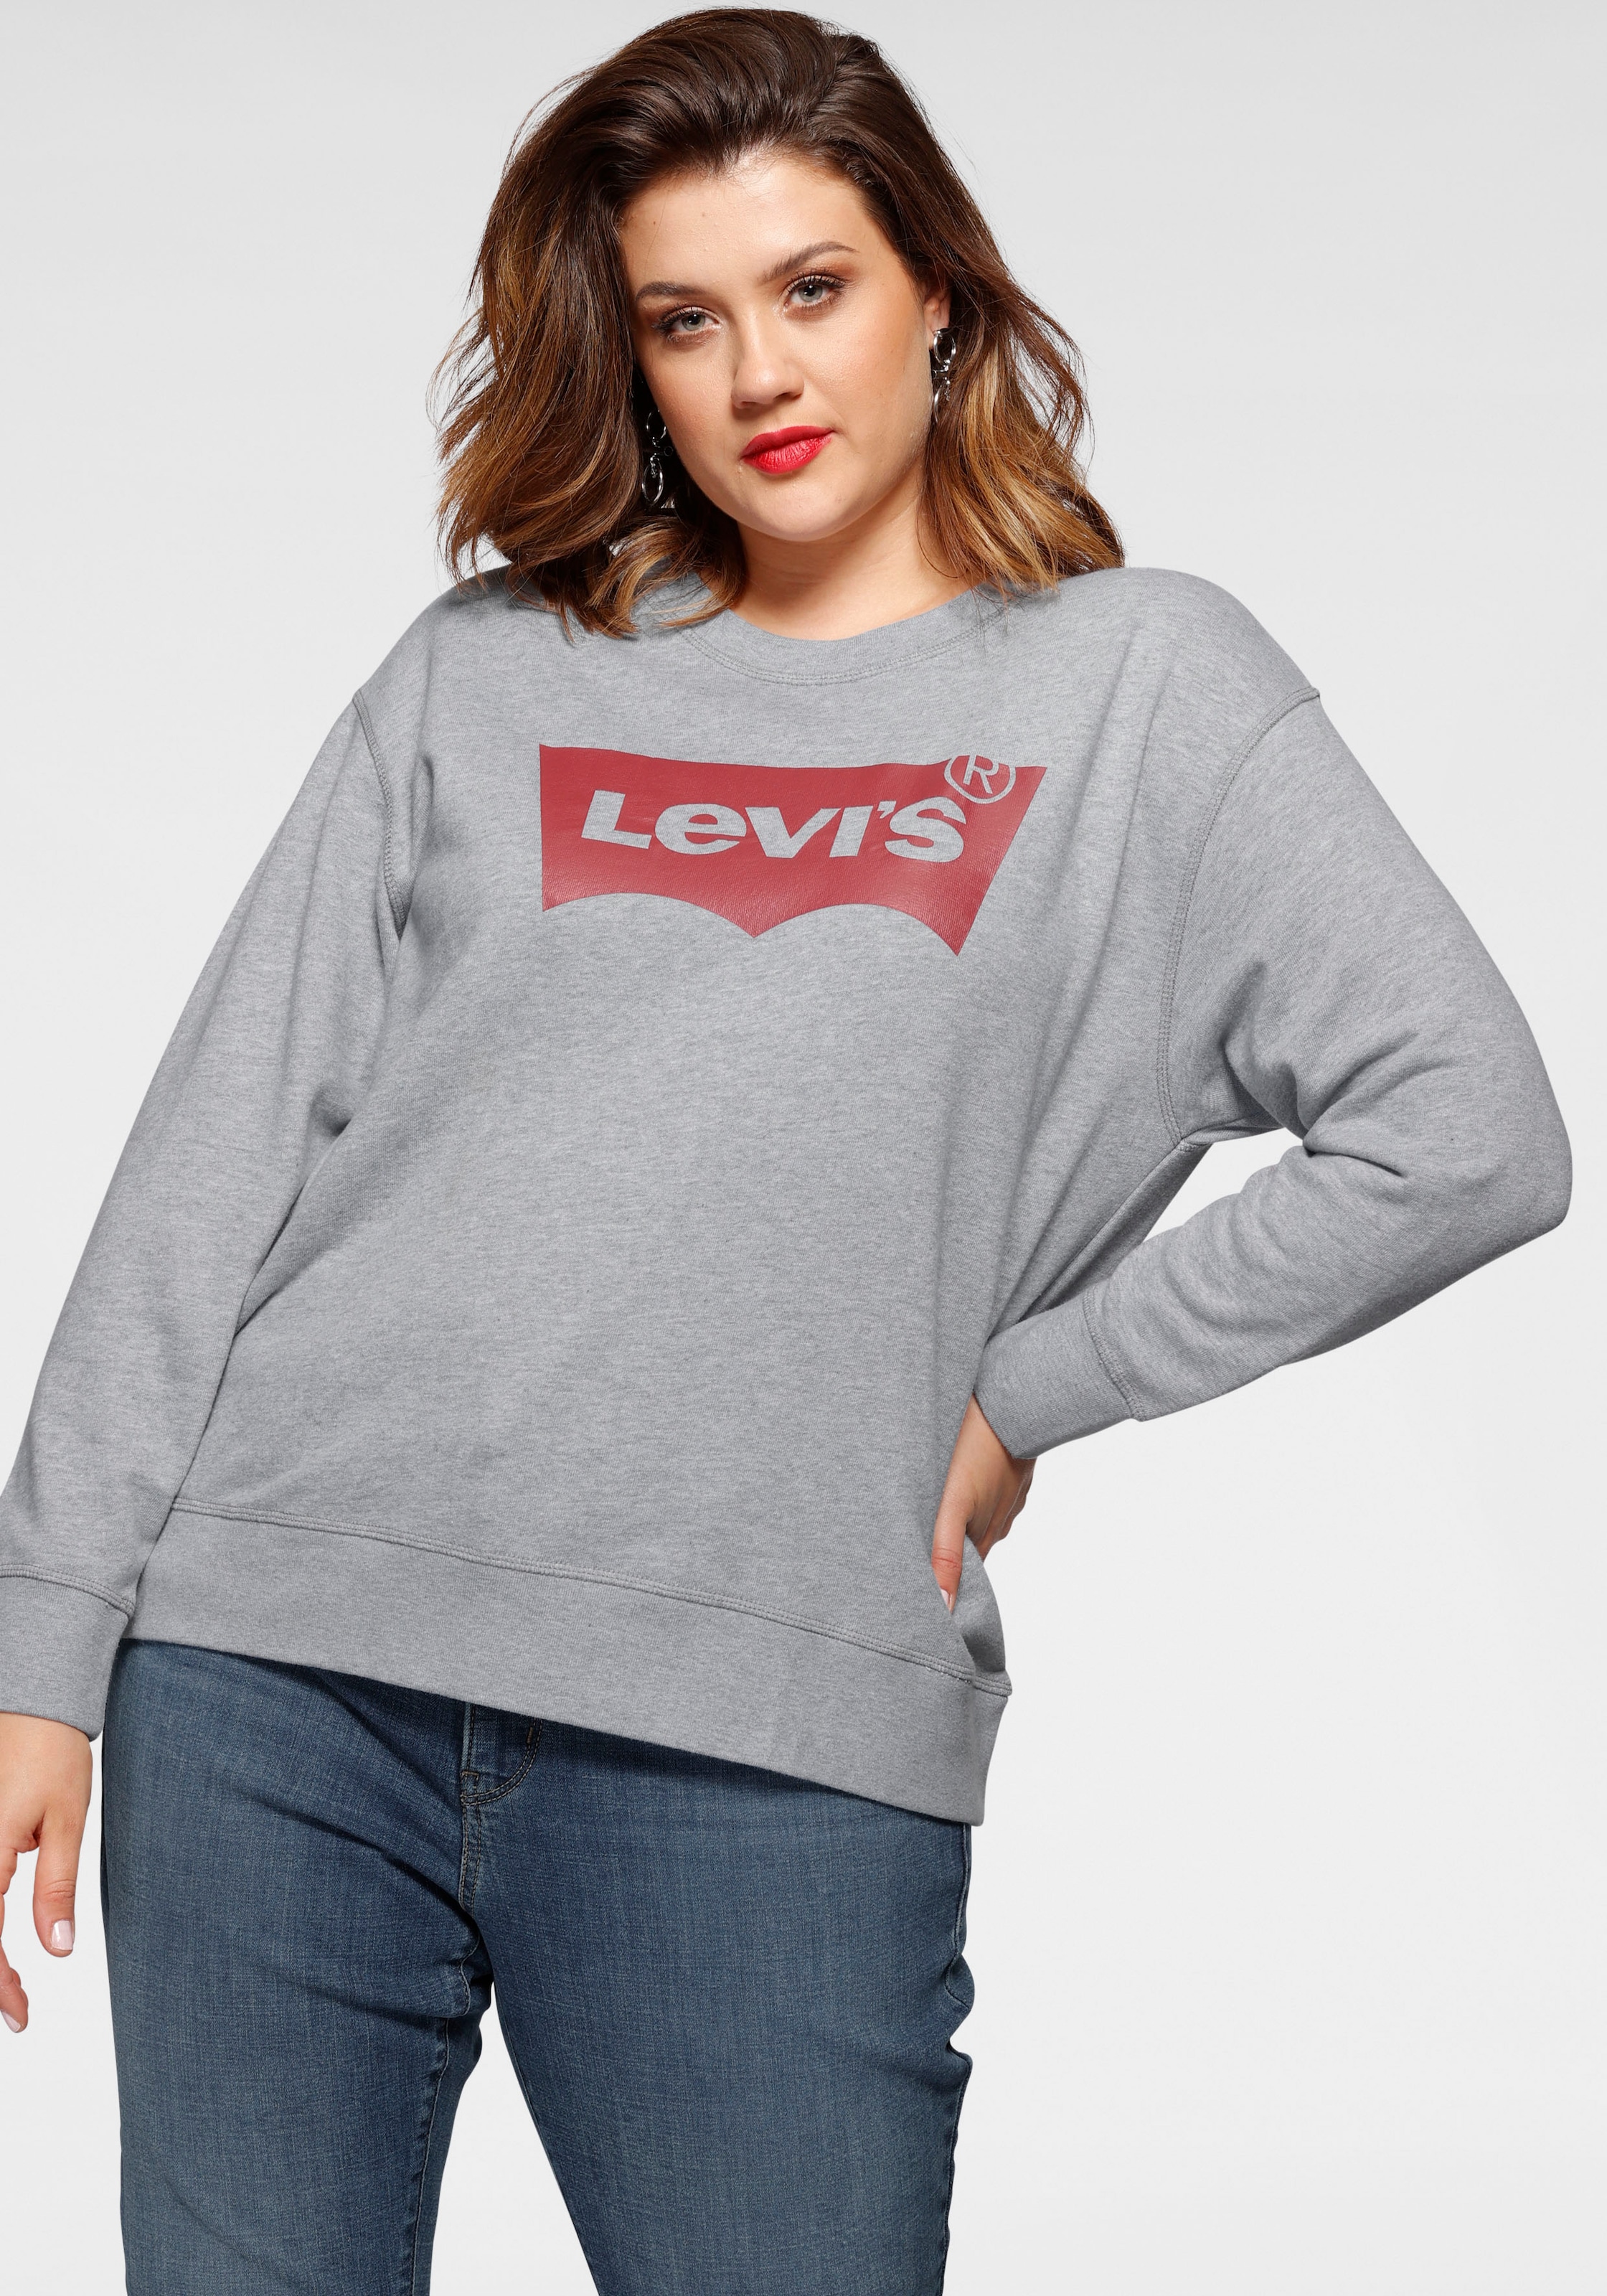 | Top-Preisen -jacken Sweatshirts kaufen in online günstige großen zu & OTTO Größen